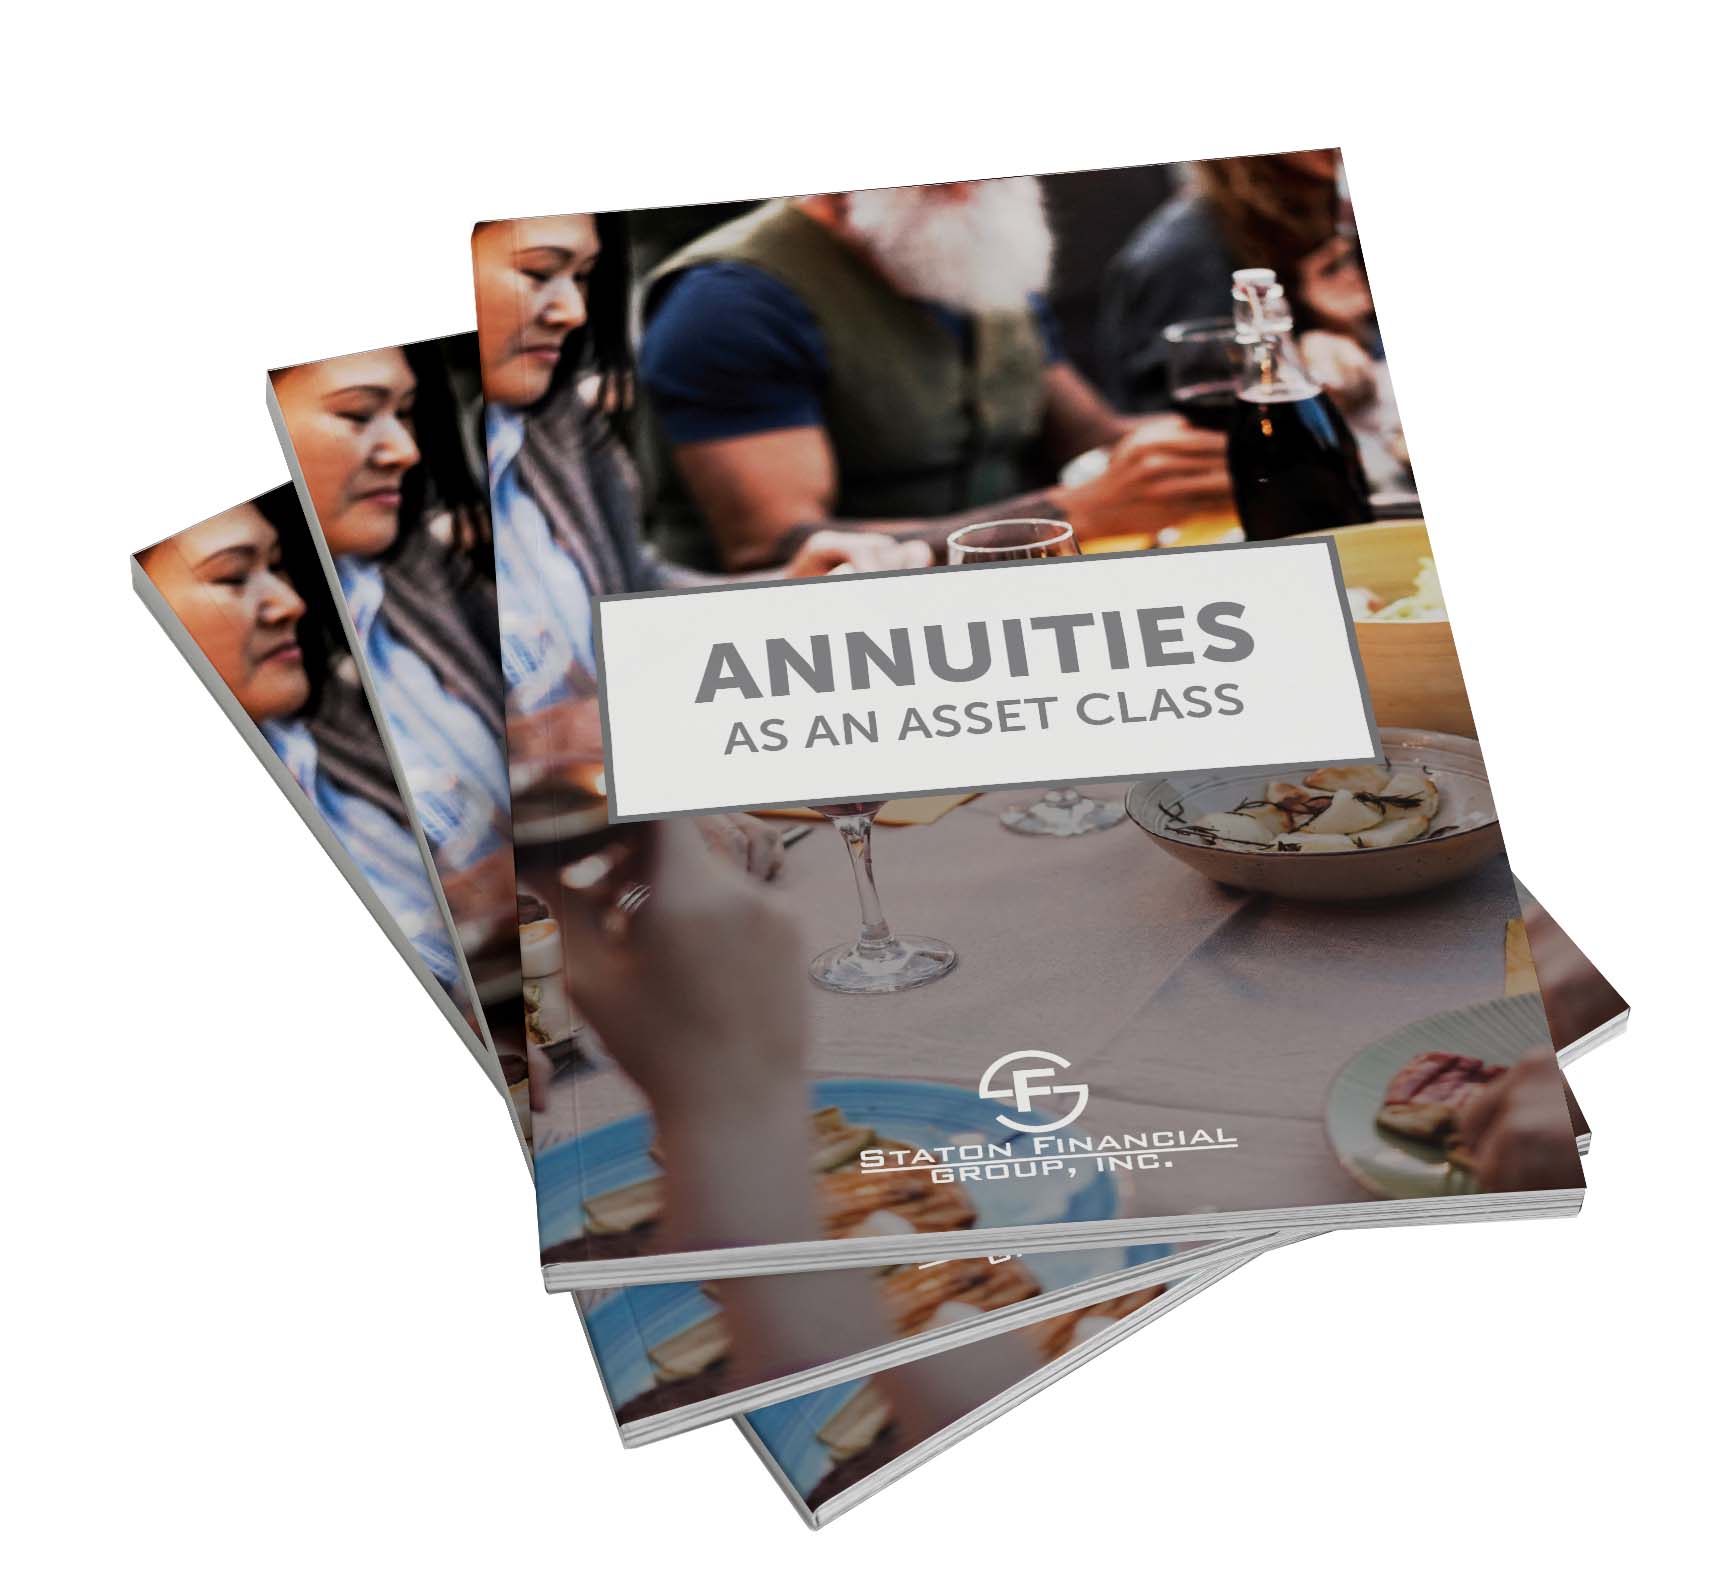 annutities as an asset class